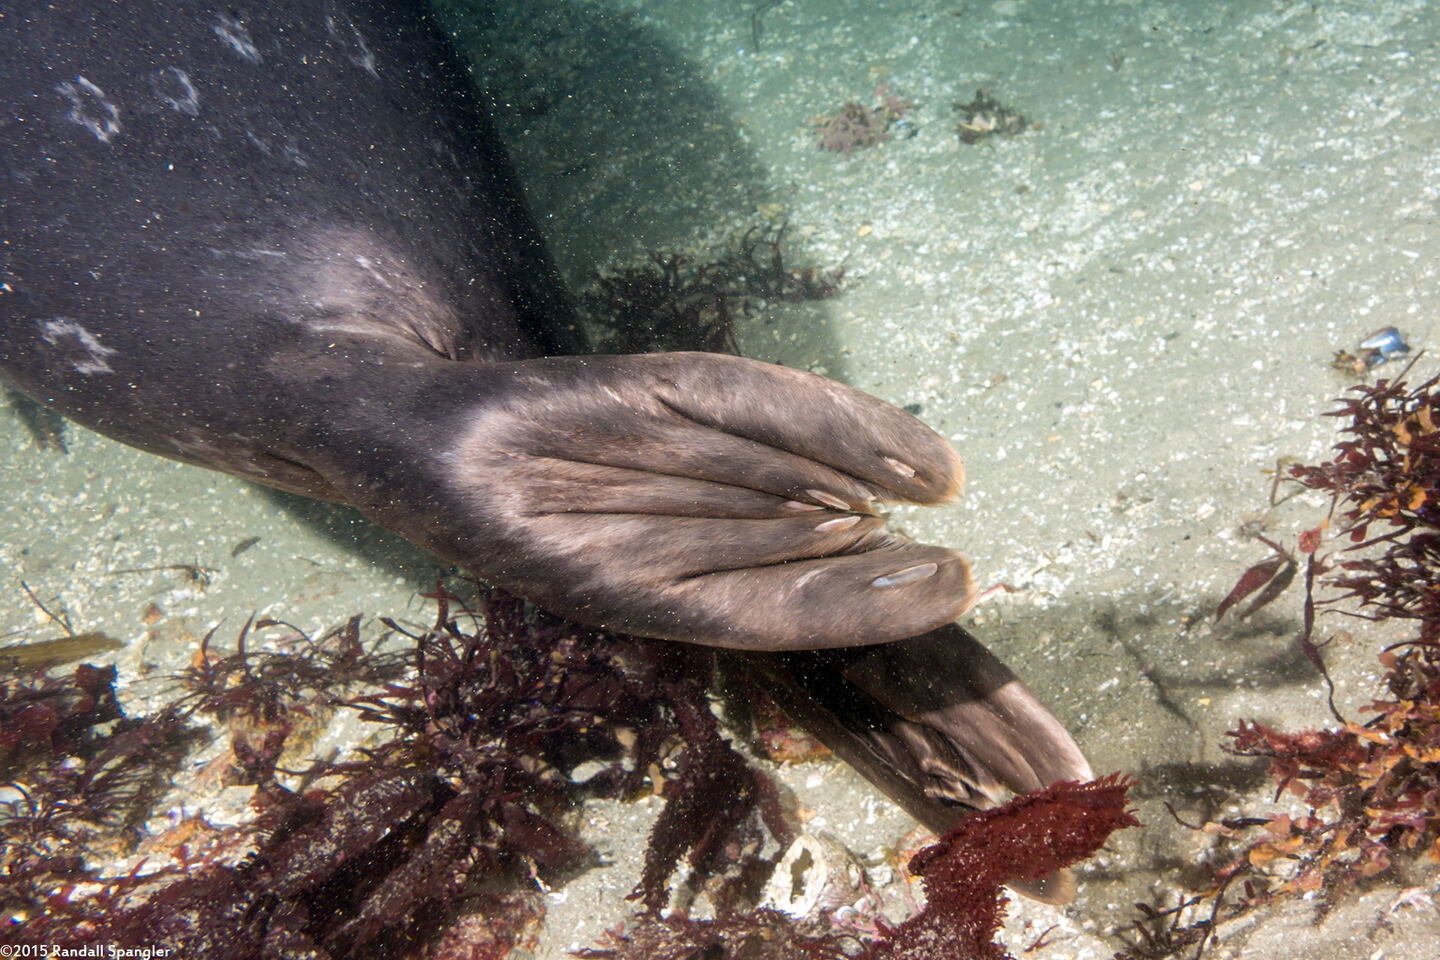 Phoca vitulina (Harbor Seal); Seals have toenails